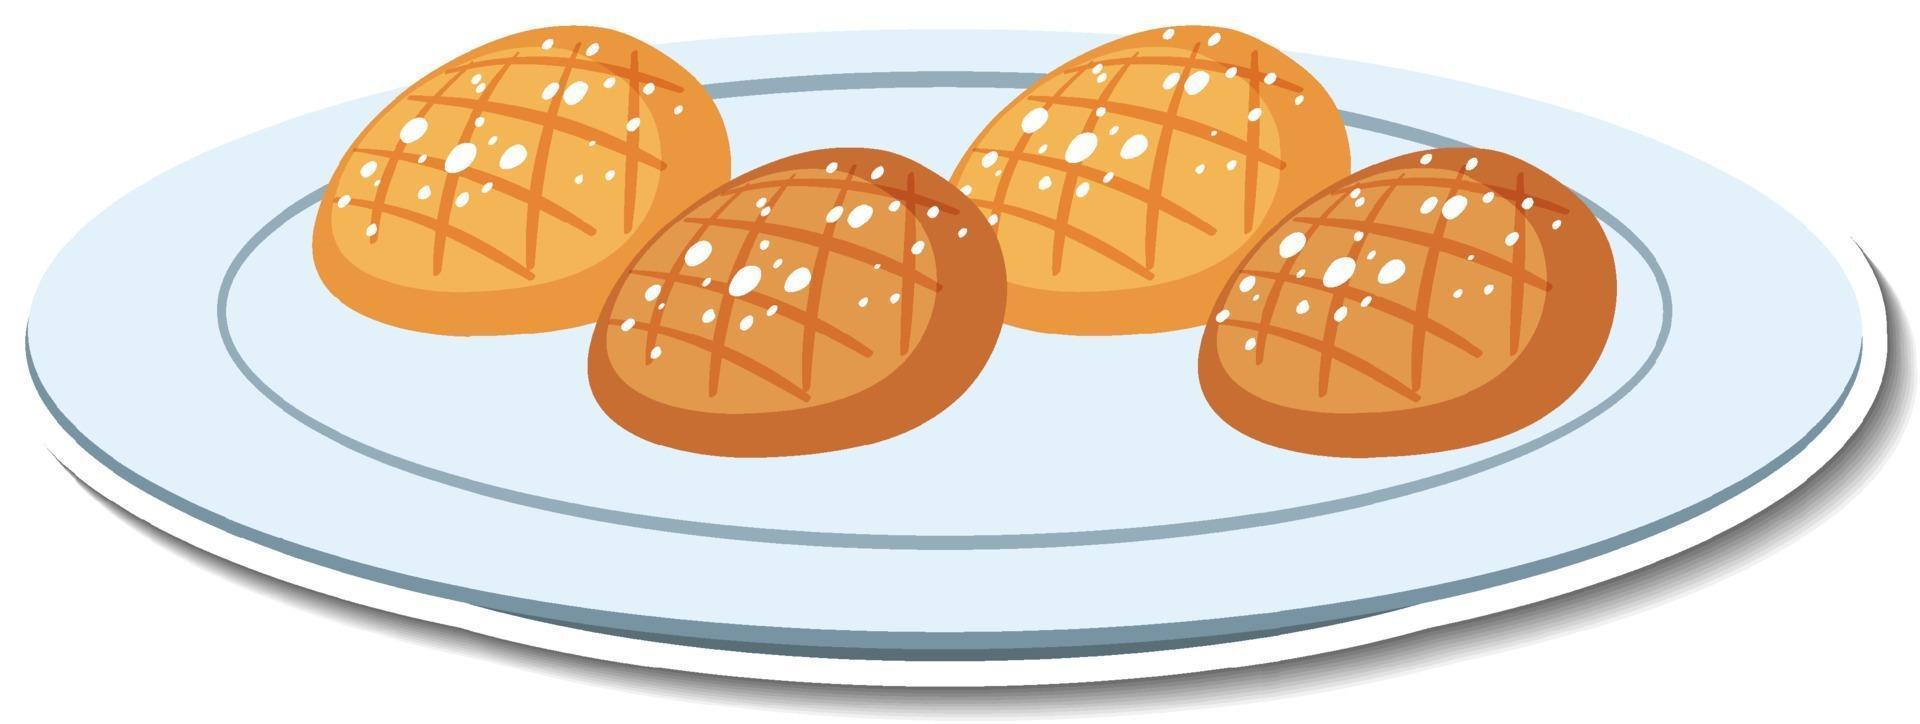 Brot auf Teller Aufkleber auf weißem Hintergrund vektor